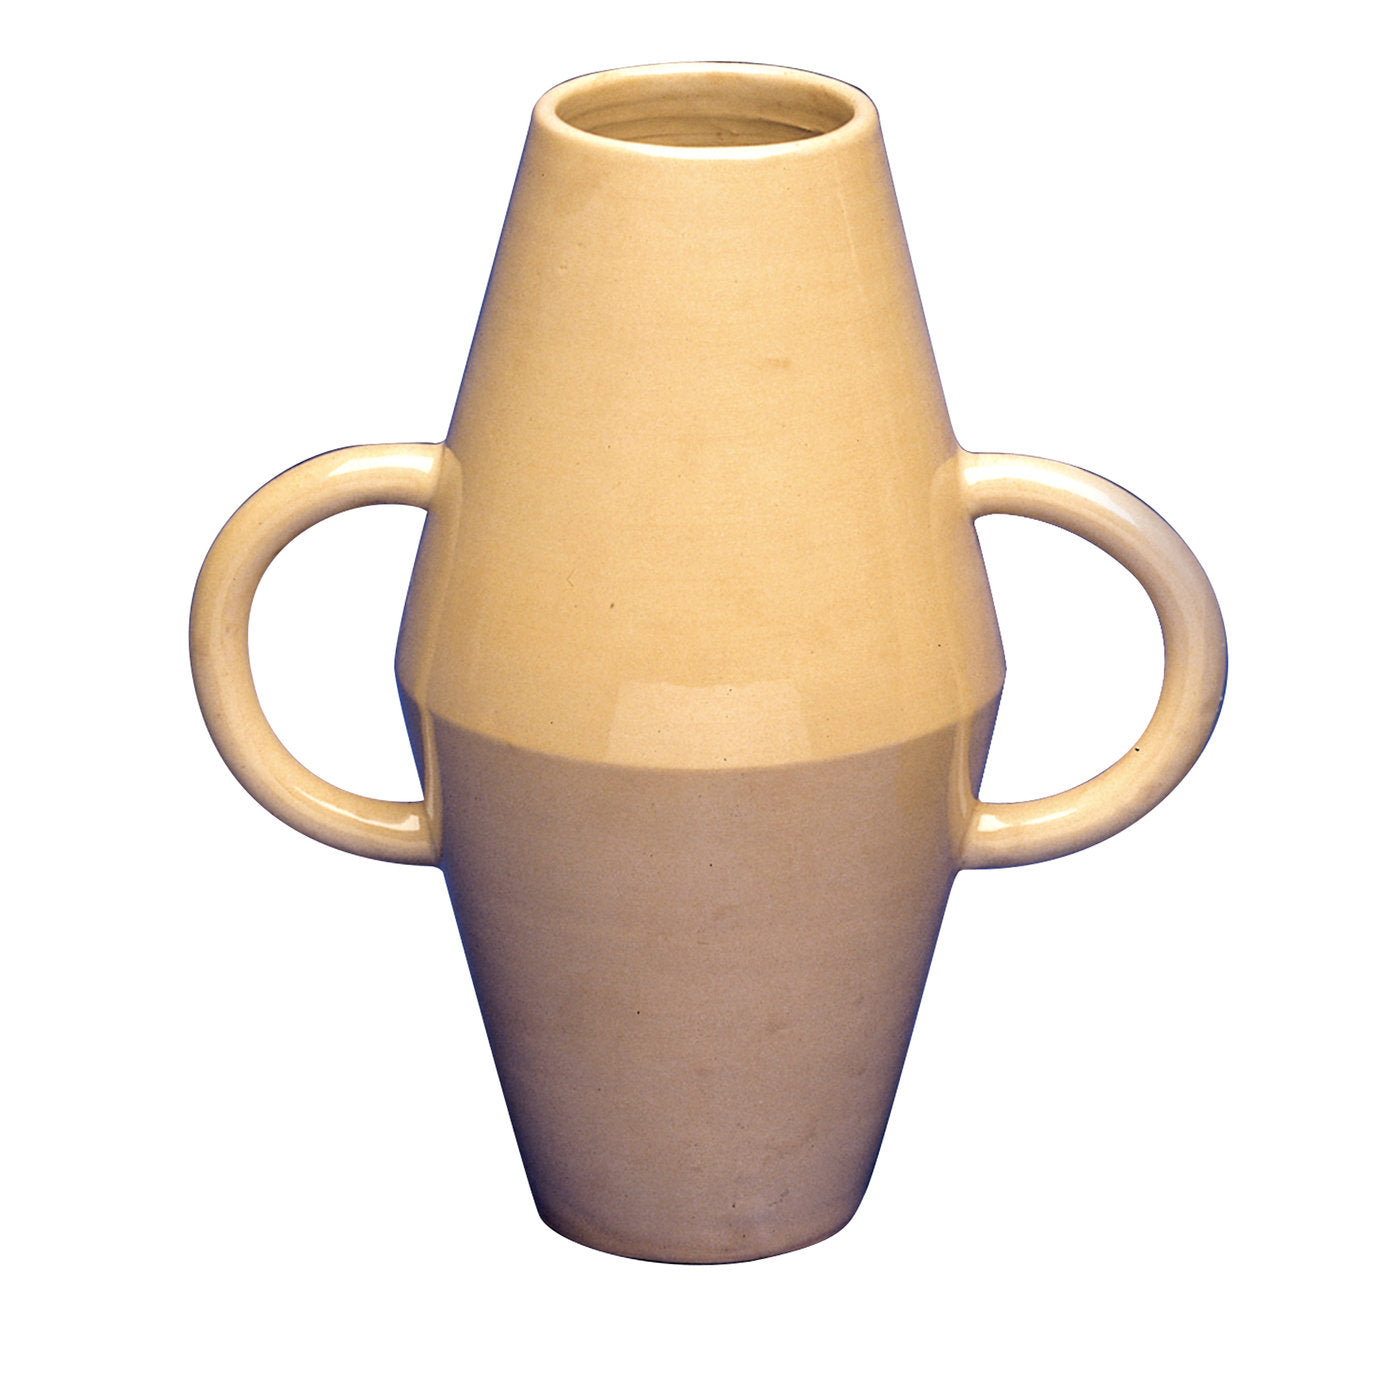 Arpino-Vase von Ugo La Pietra - Hauptansicht